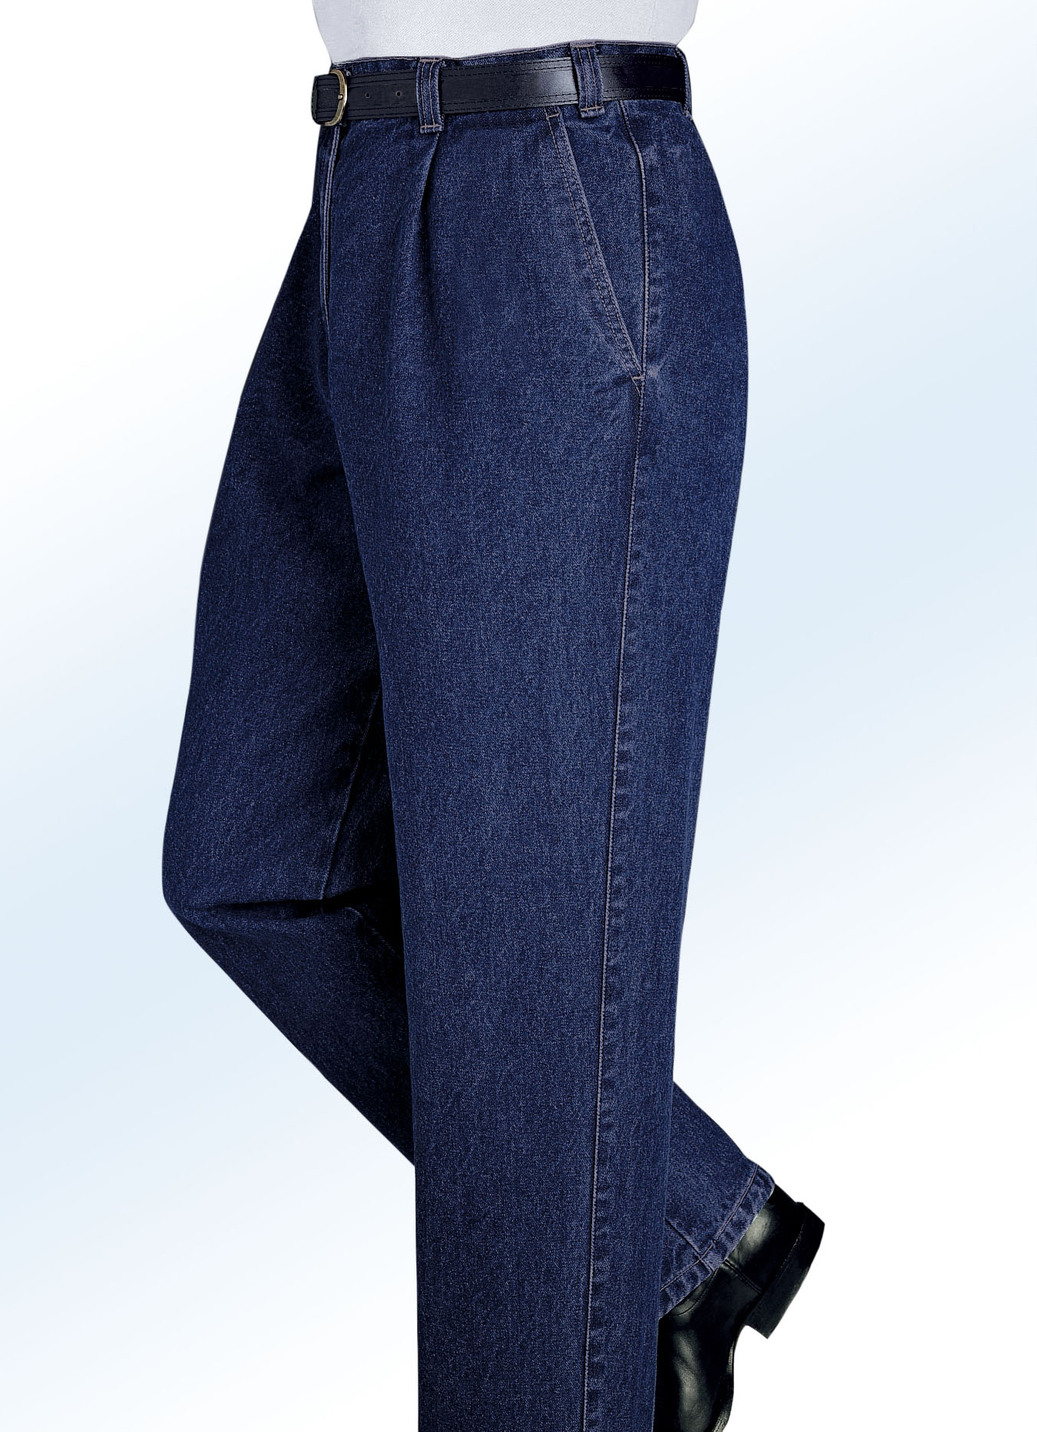 "Francesco Botti"-Jeans in 2 Qualitäten und 3 Farben, Qualität 1.Qualität, Dunkeljeans, Größe 30 von FRANCESCO BOTTI